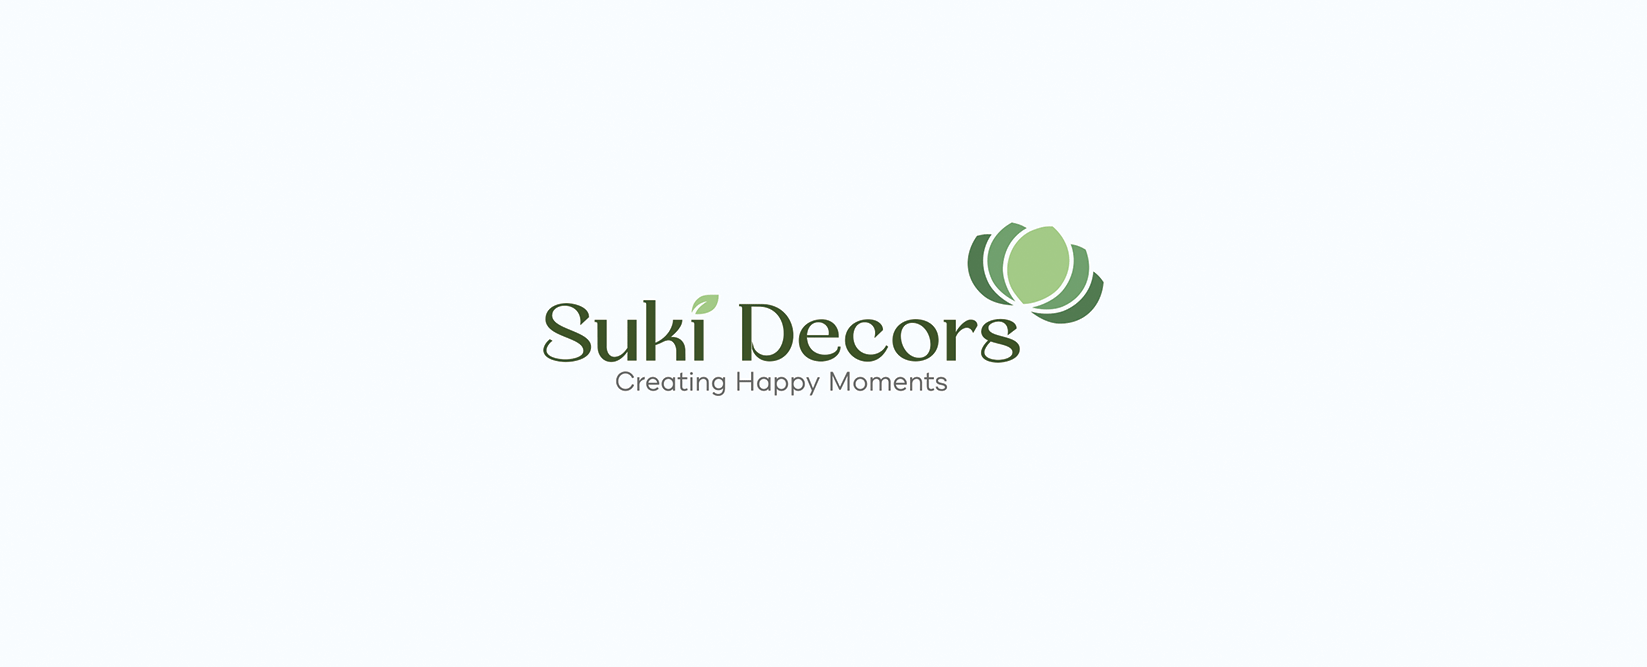 SukiDecors-whitelogo